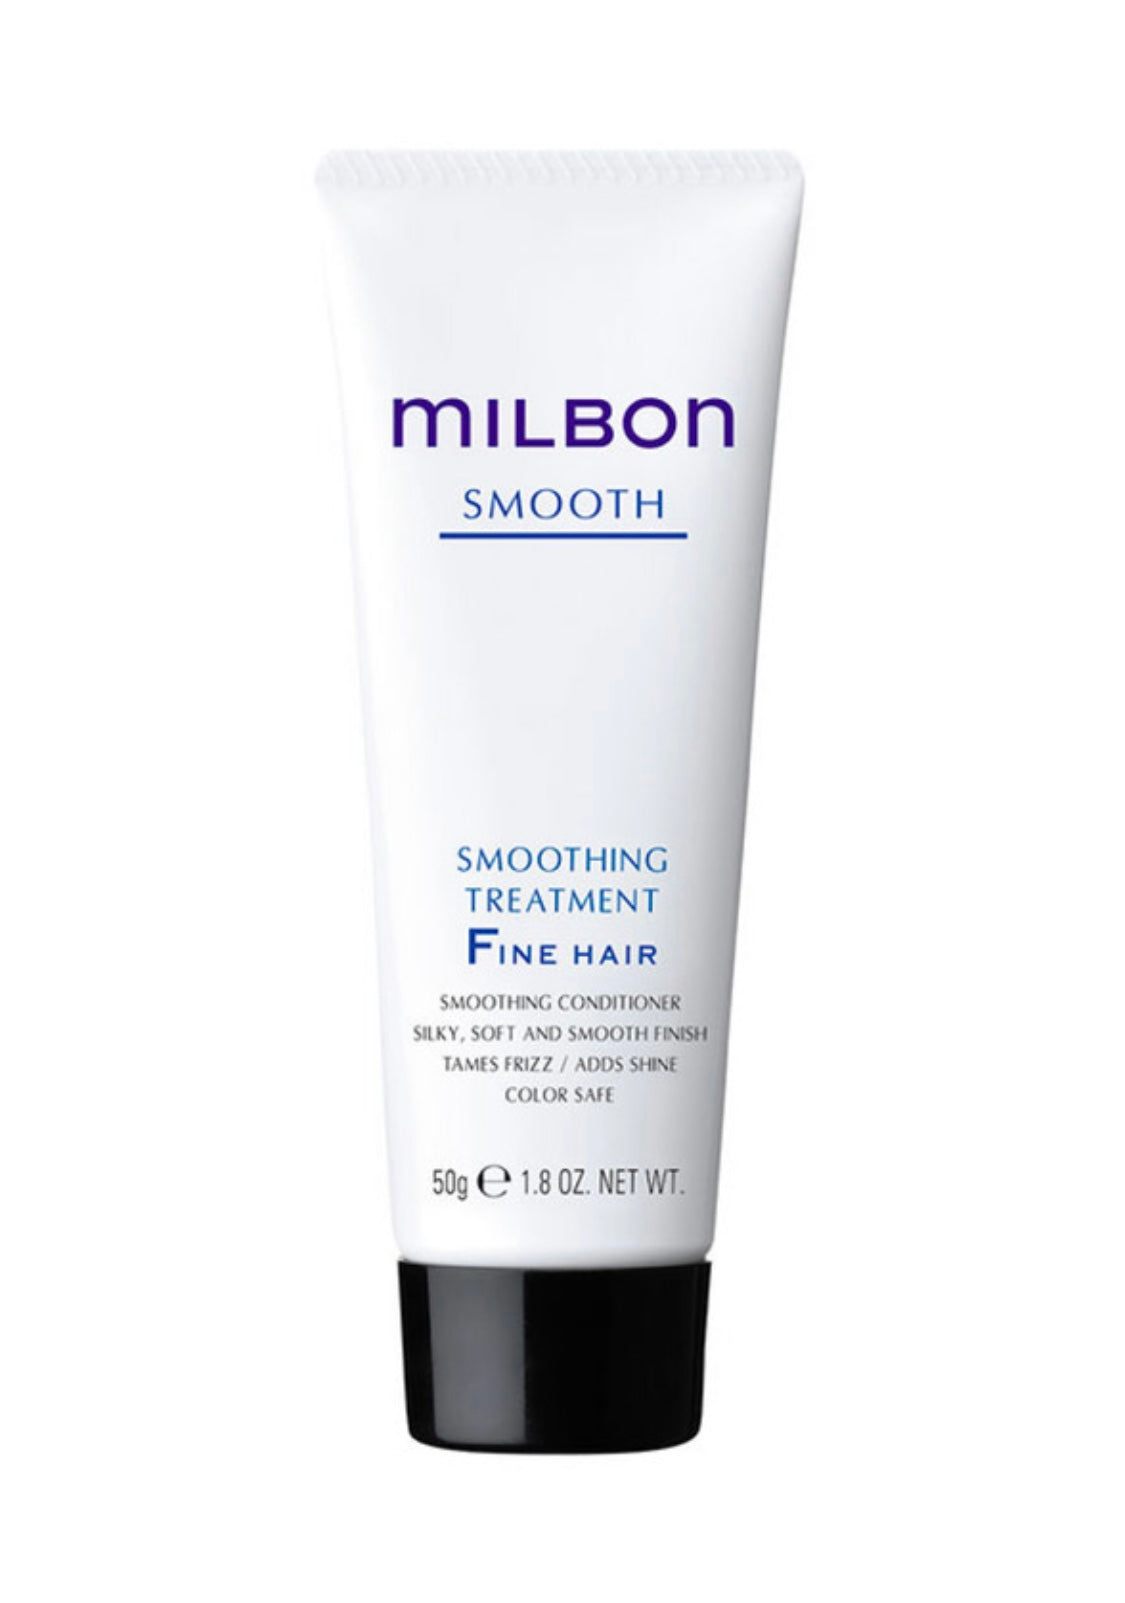 Milbon - Smooth treatment Fine hair  1.8 fl. oz. / 50 g